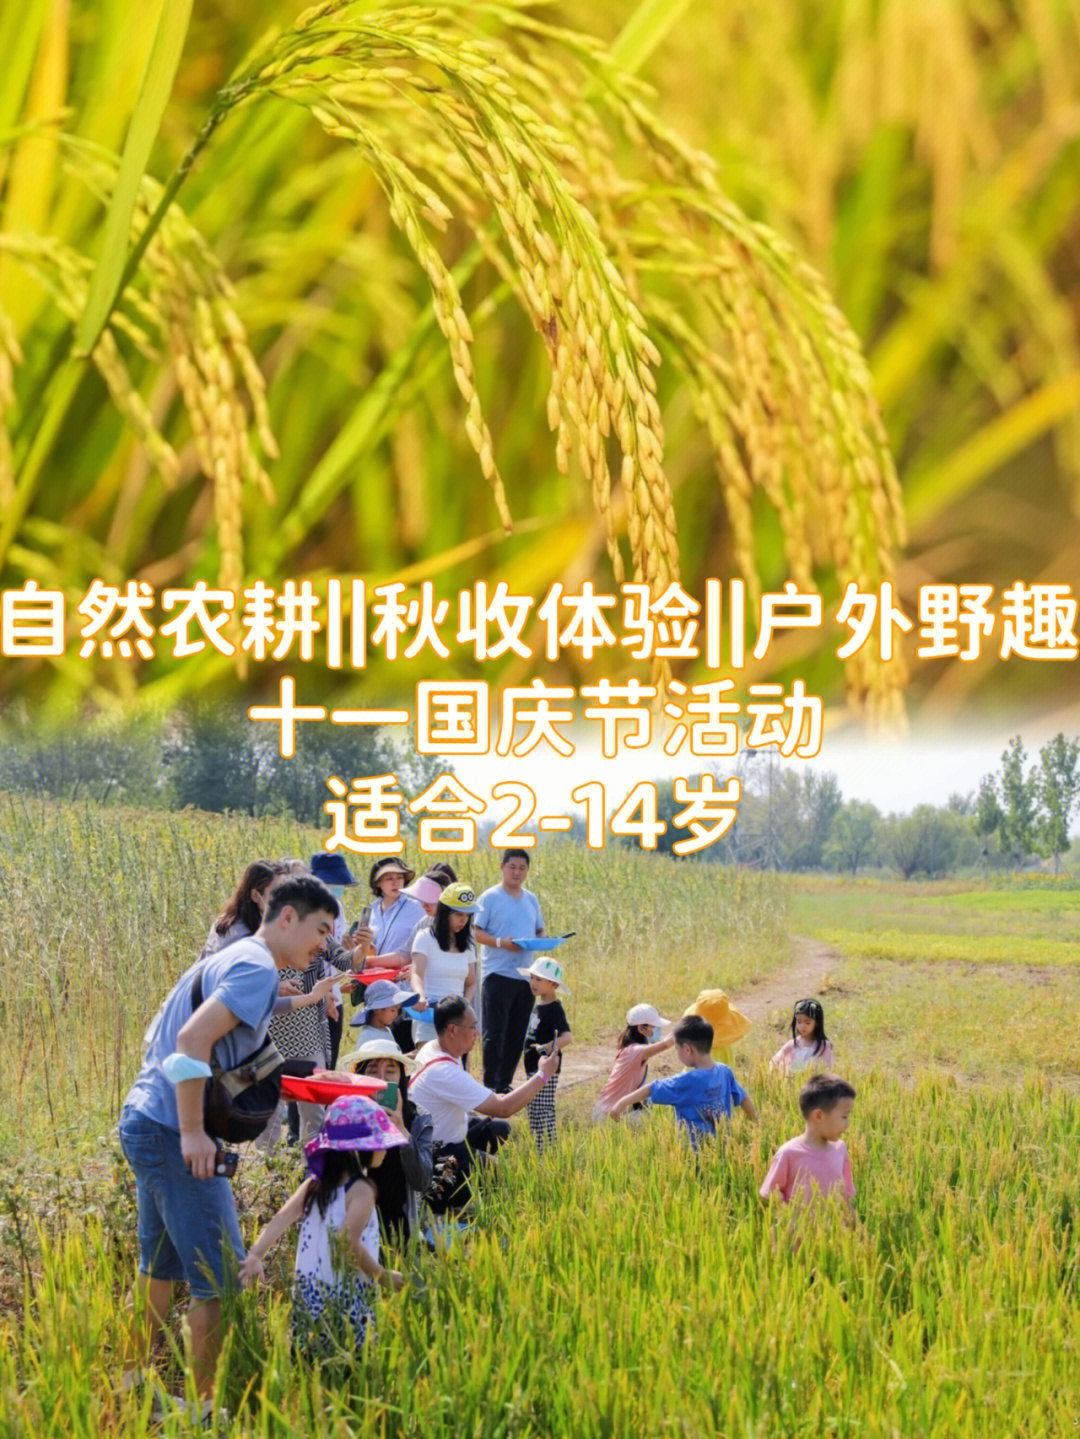 这个国庆,让小朋友们走进稻田,亲手收割打谷,让小朋友真实体验农民